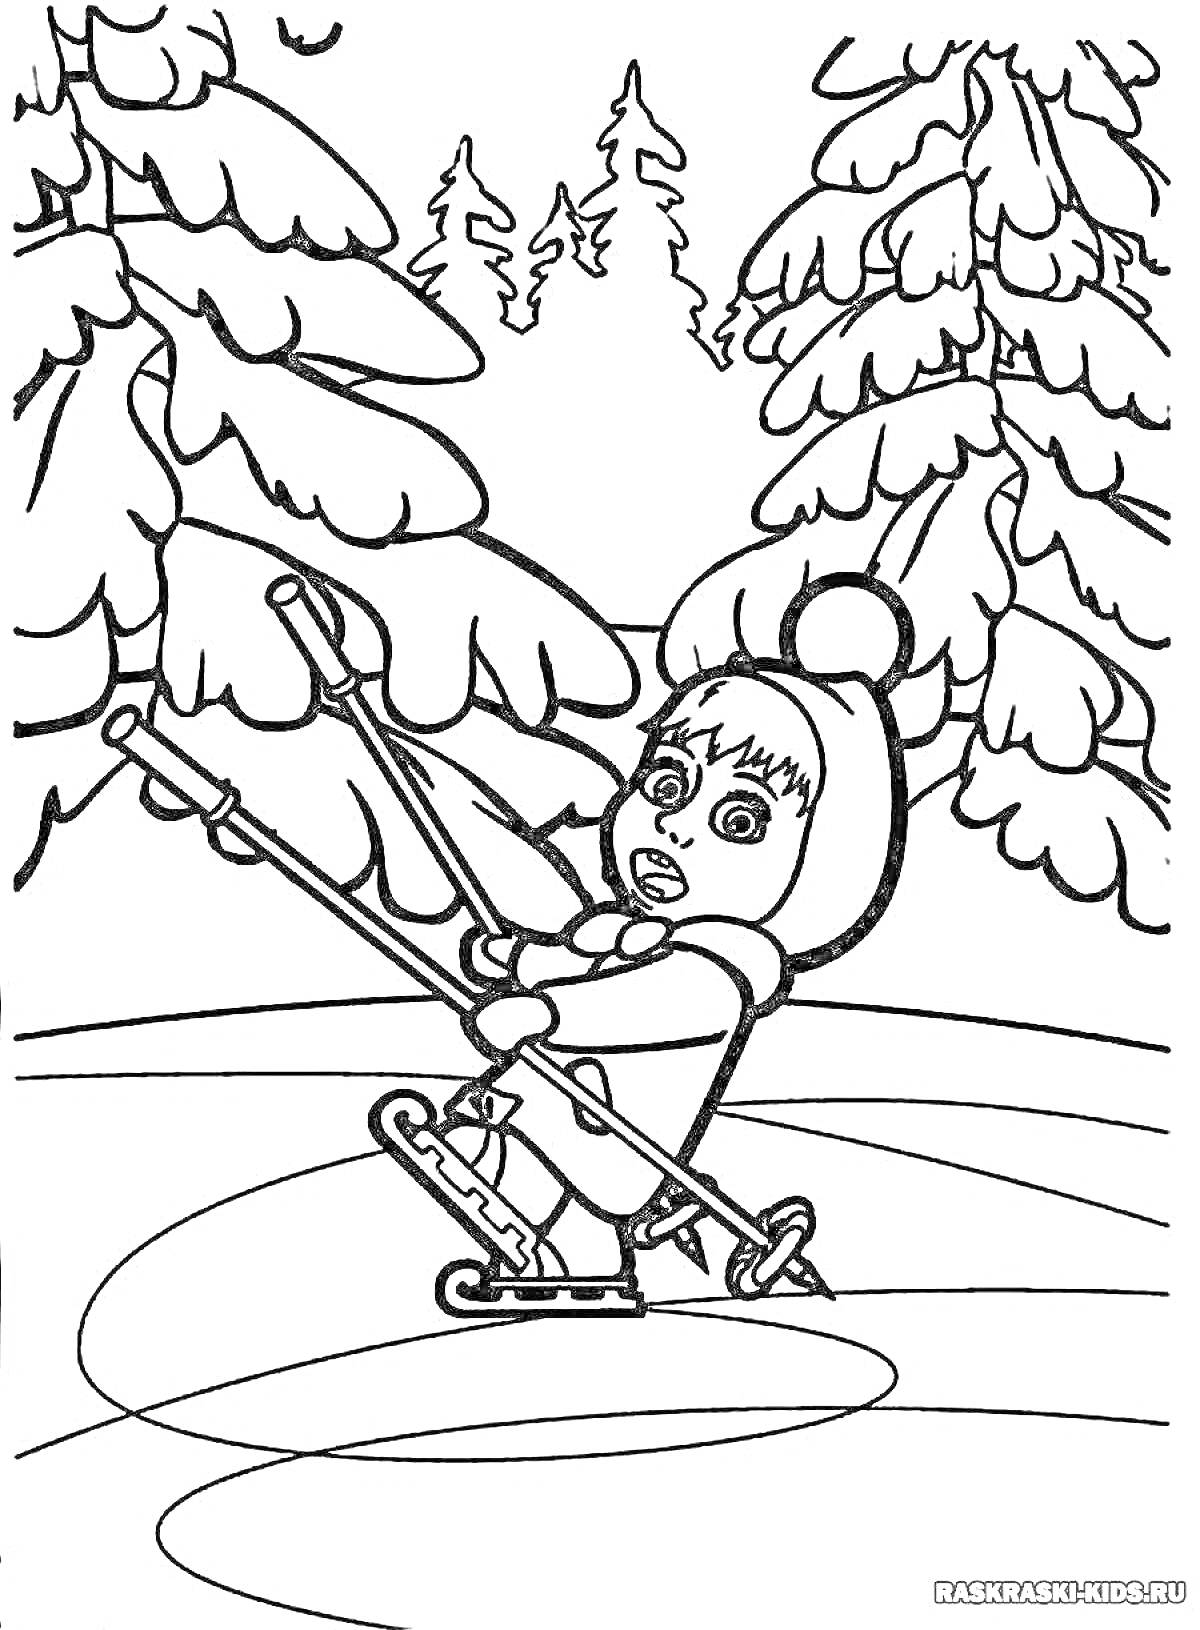 Раскраска Ребенок, катающийся на лыжах среди снежного леса